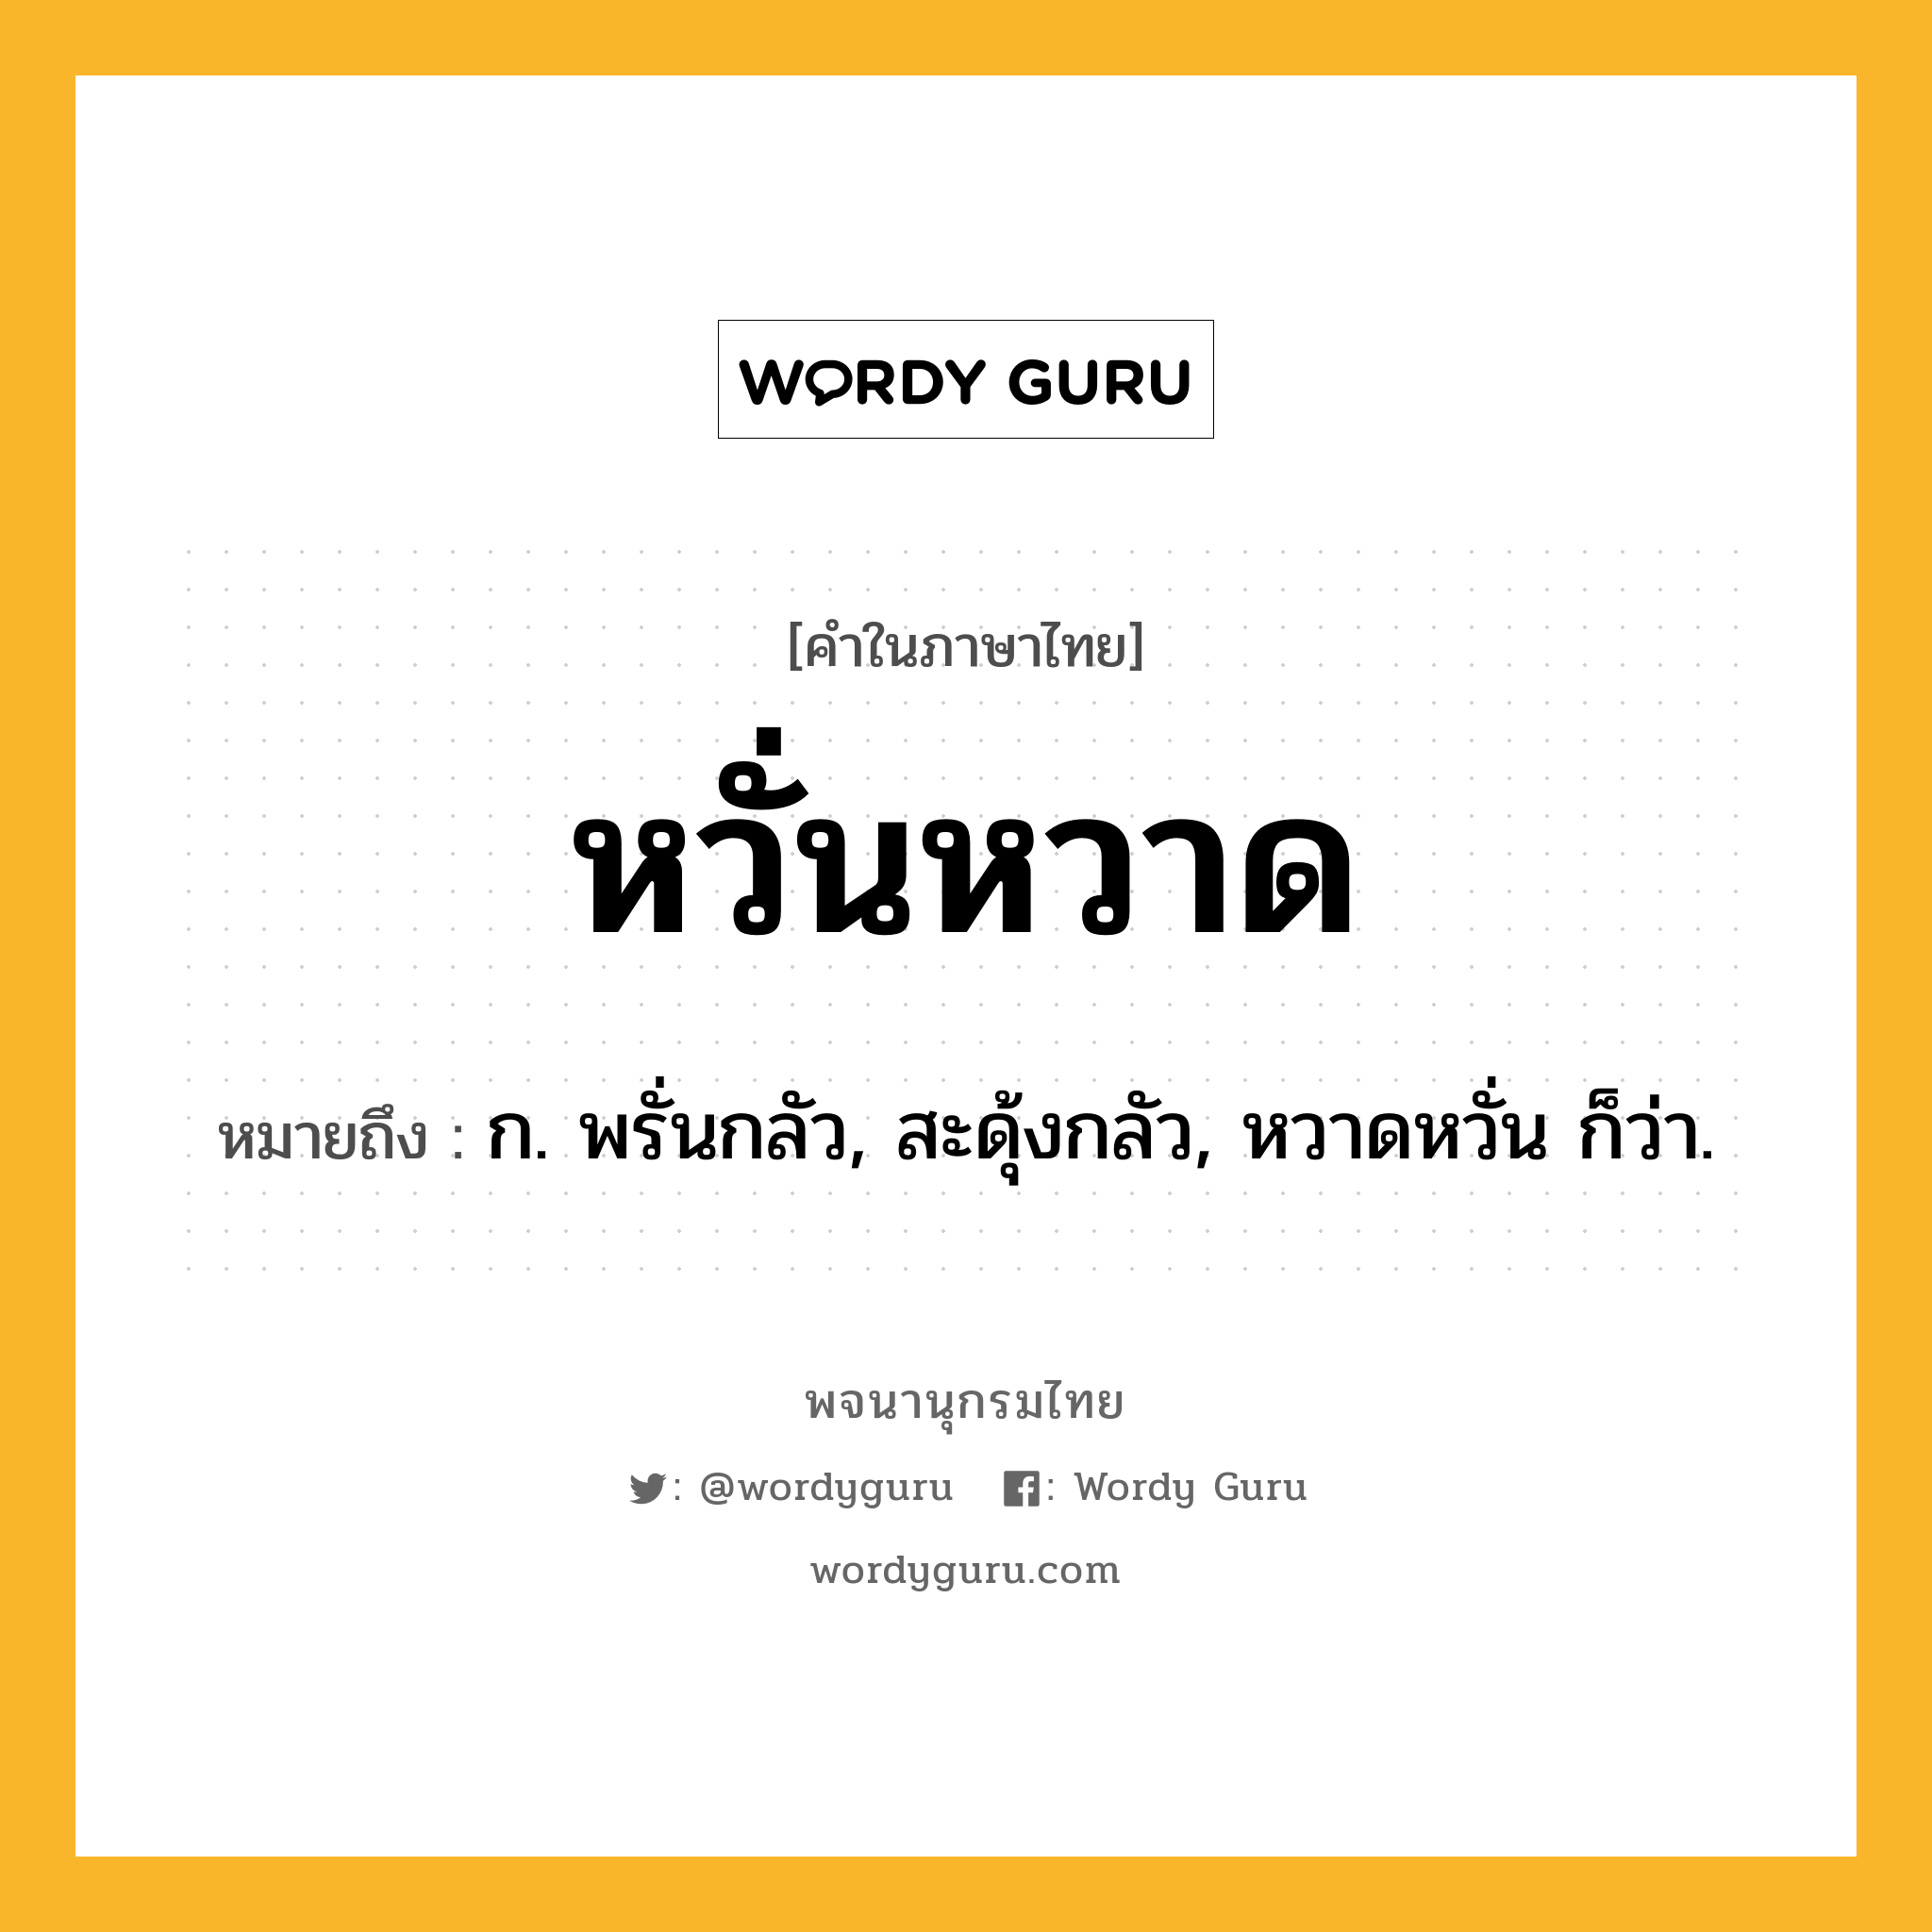 หวั่นหวาด หมายถึงอะไร?, คำในภาษาไทย หวั่นหวาด หมายถึง ก. พรั่นกลัว, สะดุ้งกลัว, หวาดหวั่น ก็ว่า.